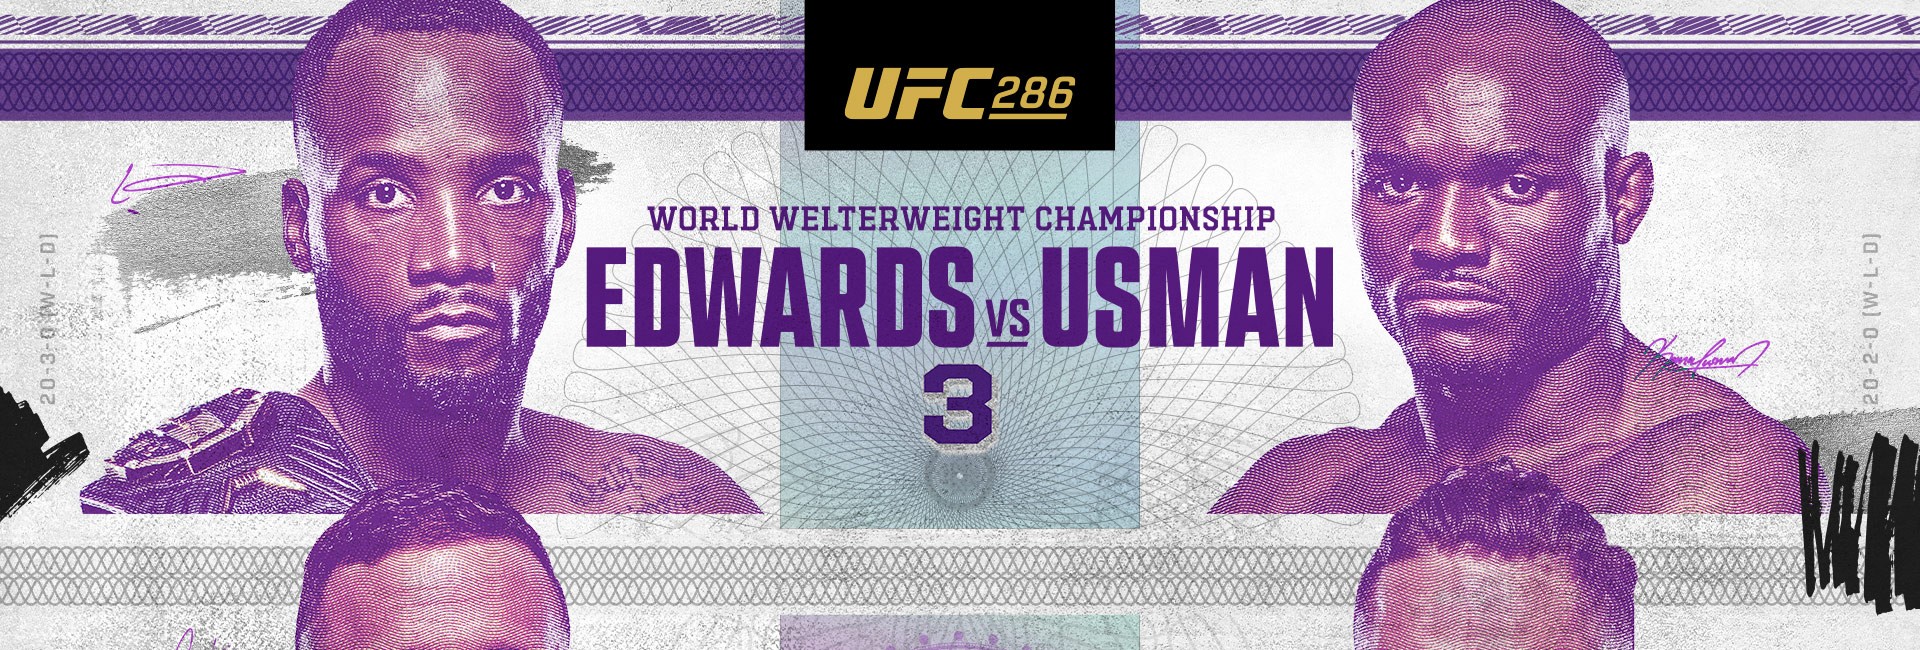 UFC 286: Edwards vs. Usman